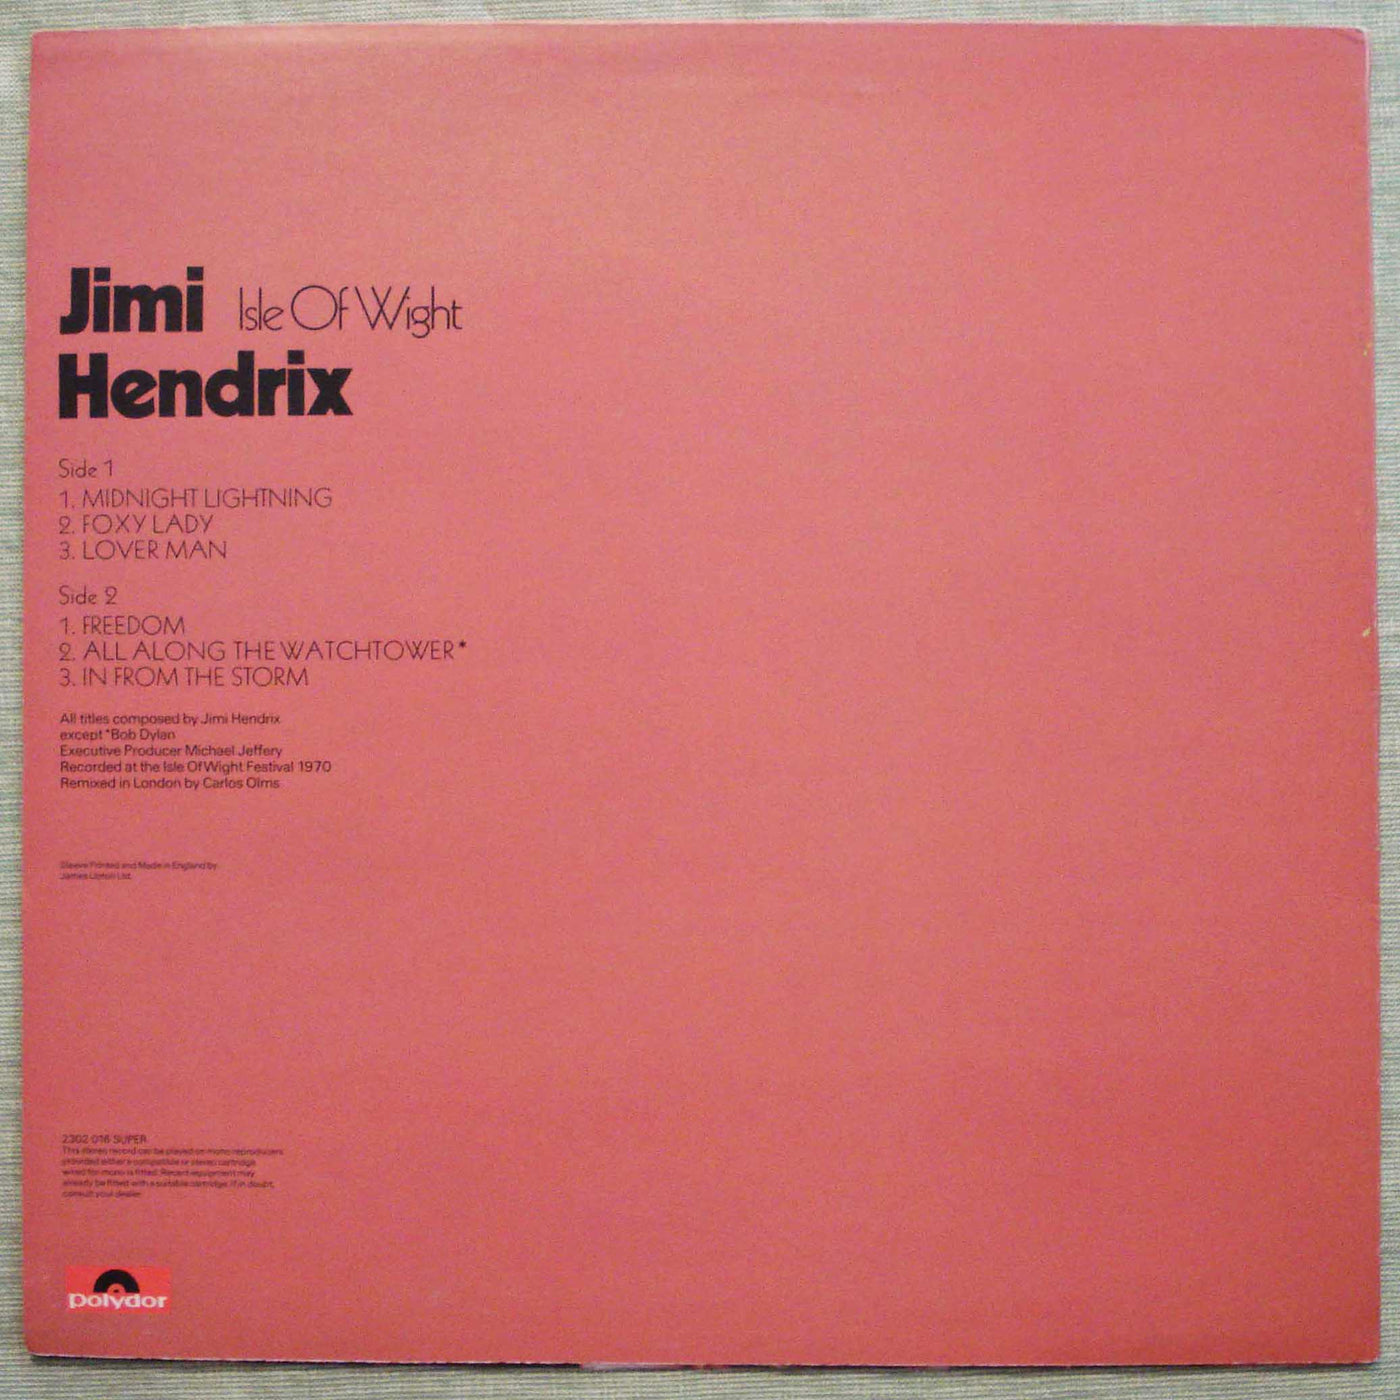 Jimi Hendrix - Isle of Wight (1971) Vinyl LP 33rpm 2302016